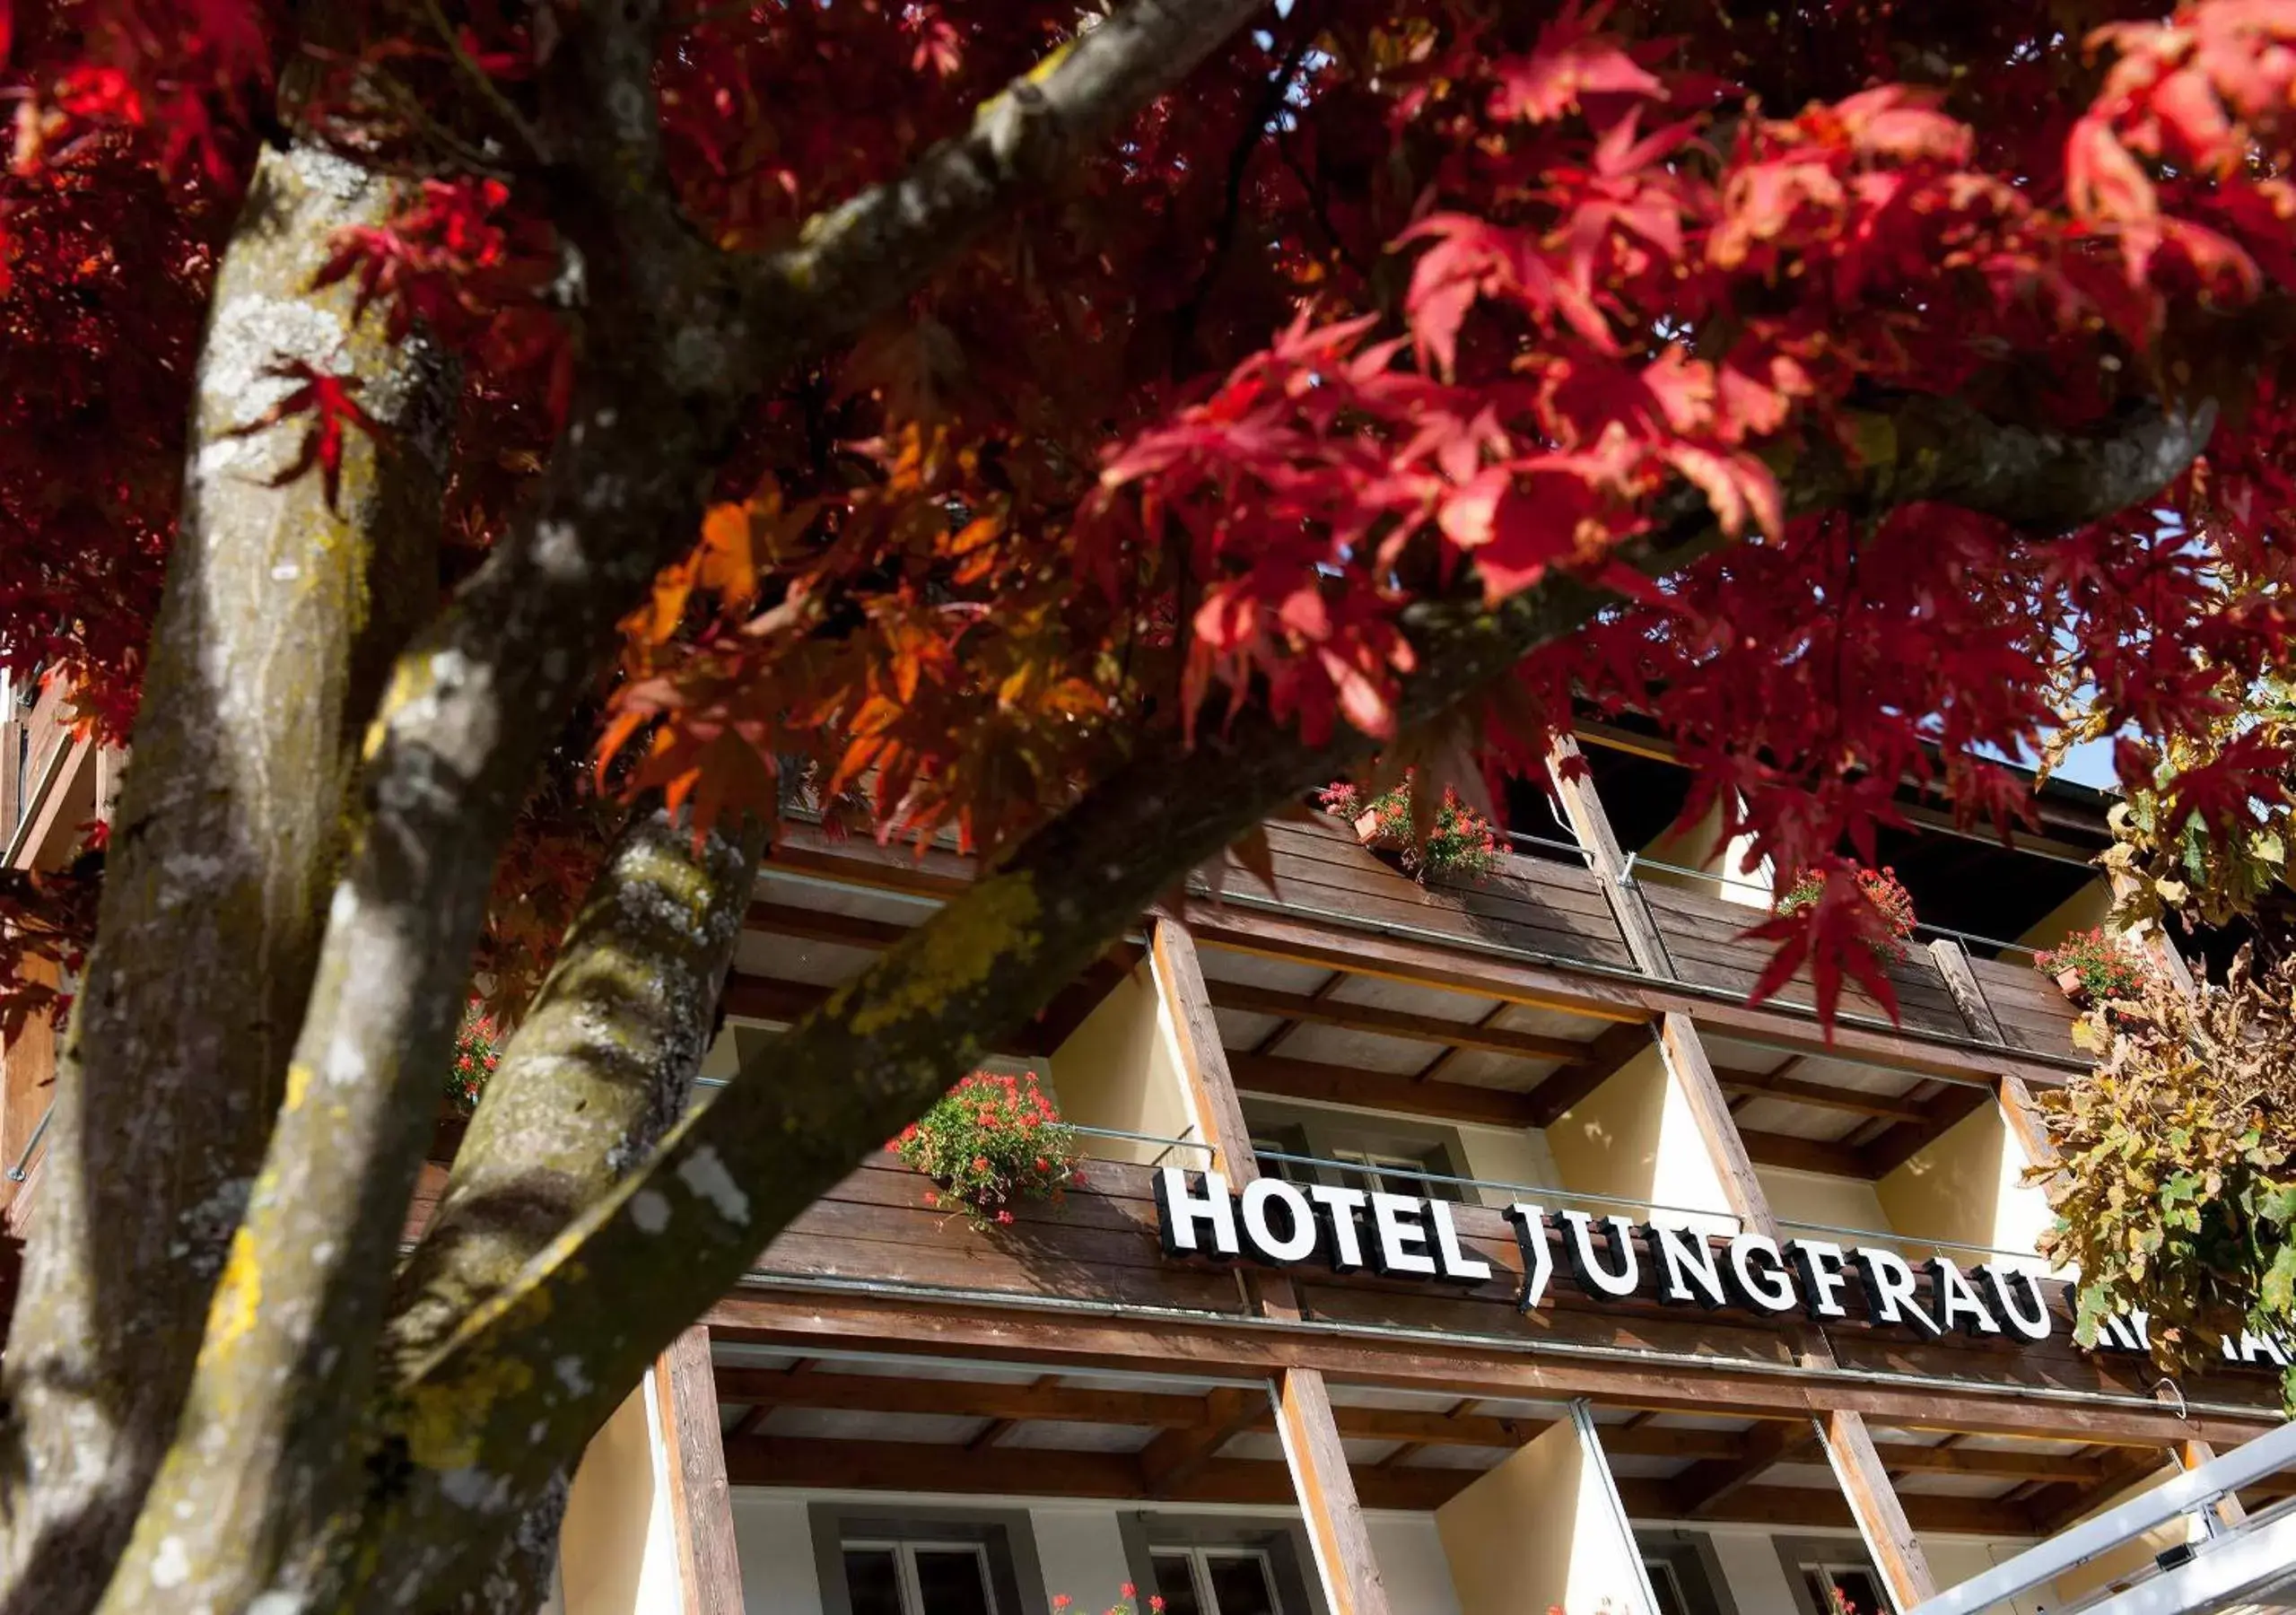 Facade/entrance in Jungfrau Hotel